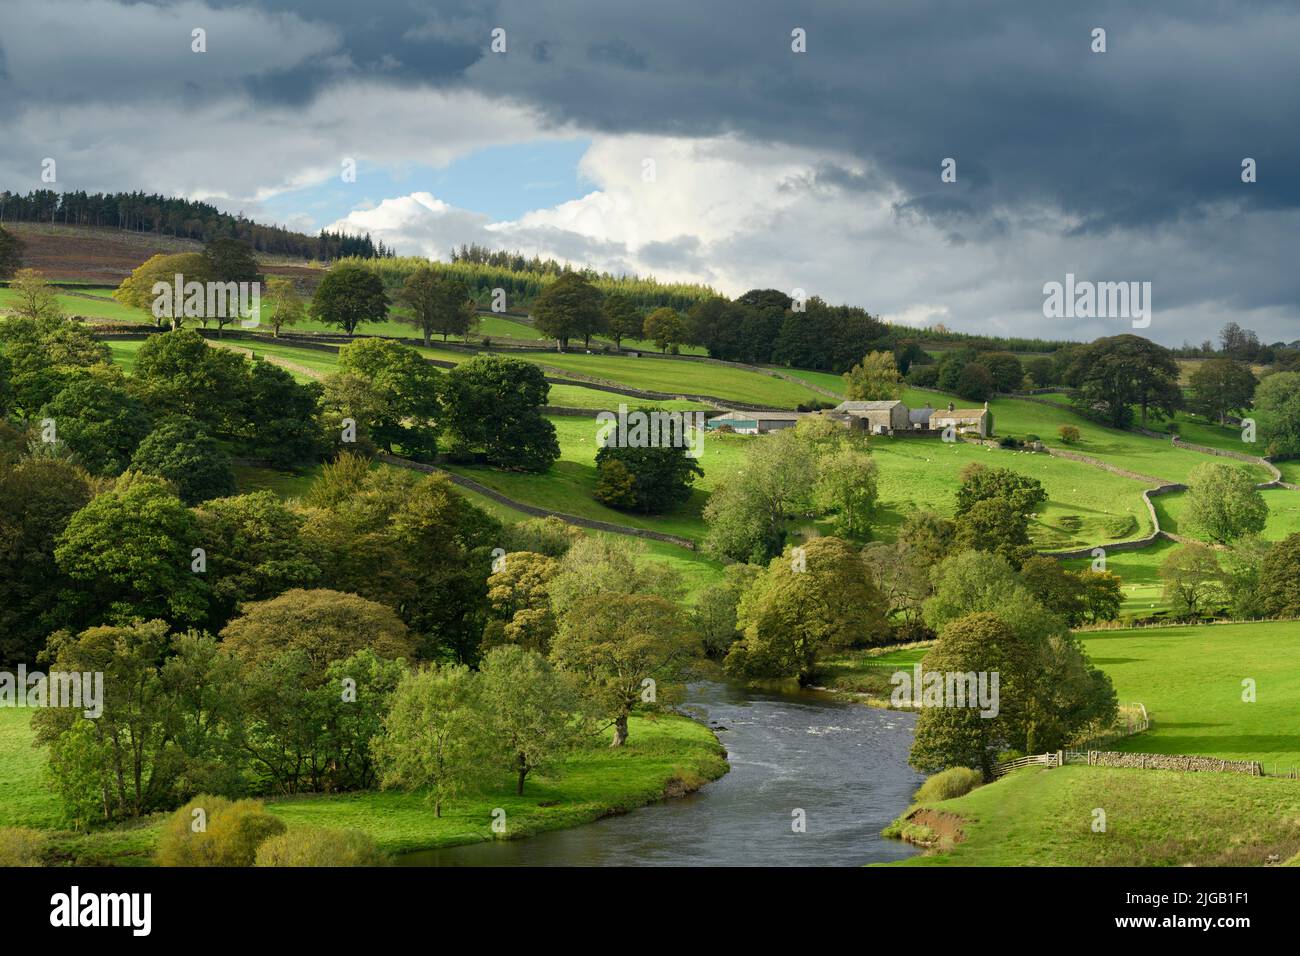 Paesaggio rurale paesaggistico Yorkshire Dales valle (River Wharfe, fattoria tradizionale, collina, alberi lungo il fiume, pareti di pietra) - Wharfedale, Inghilterra, Regno Unito. Foto Stock